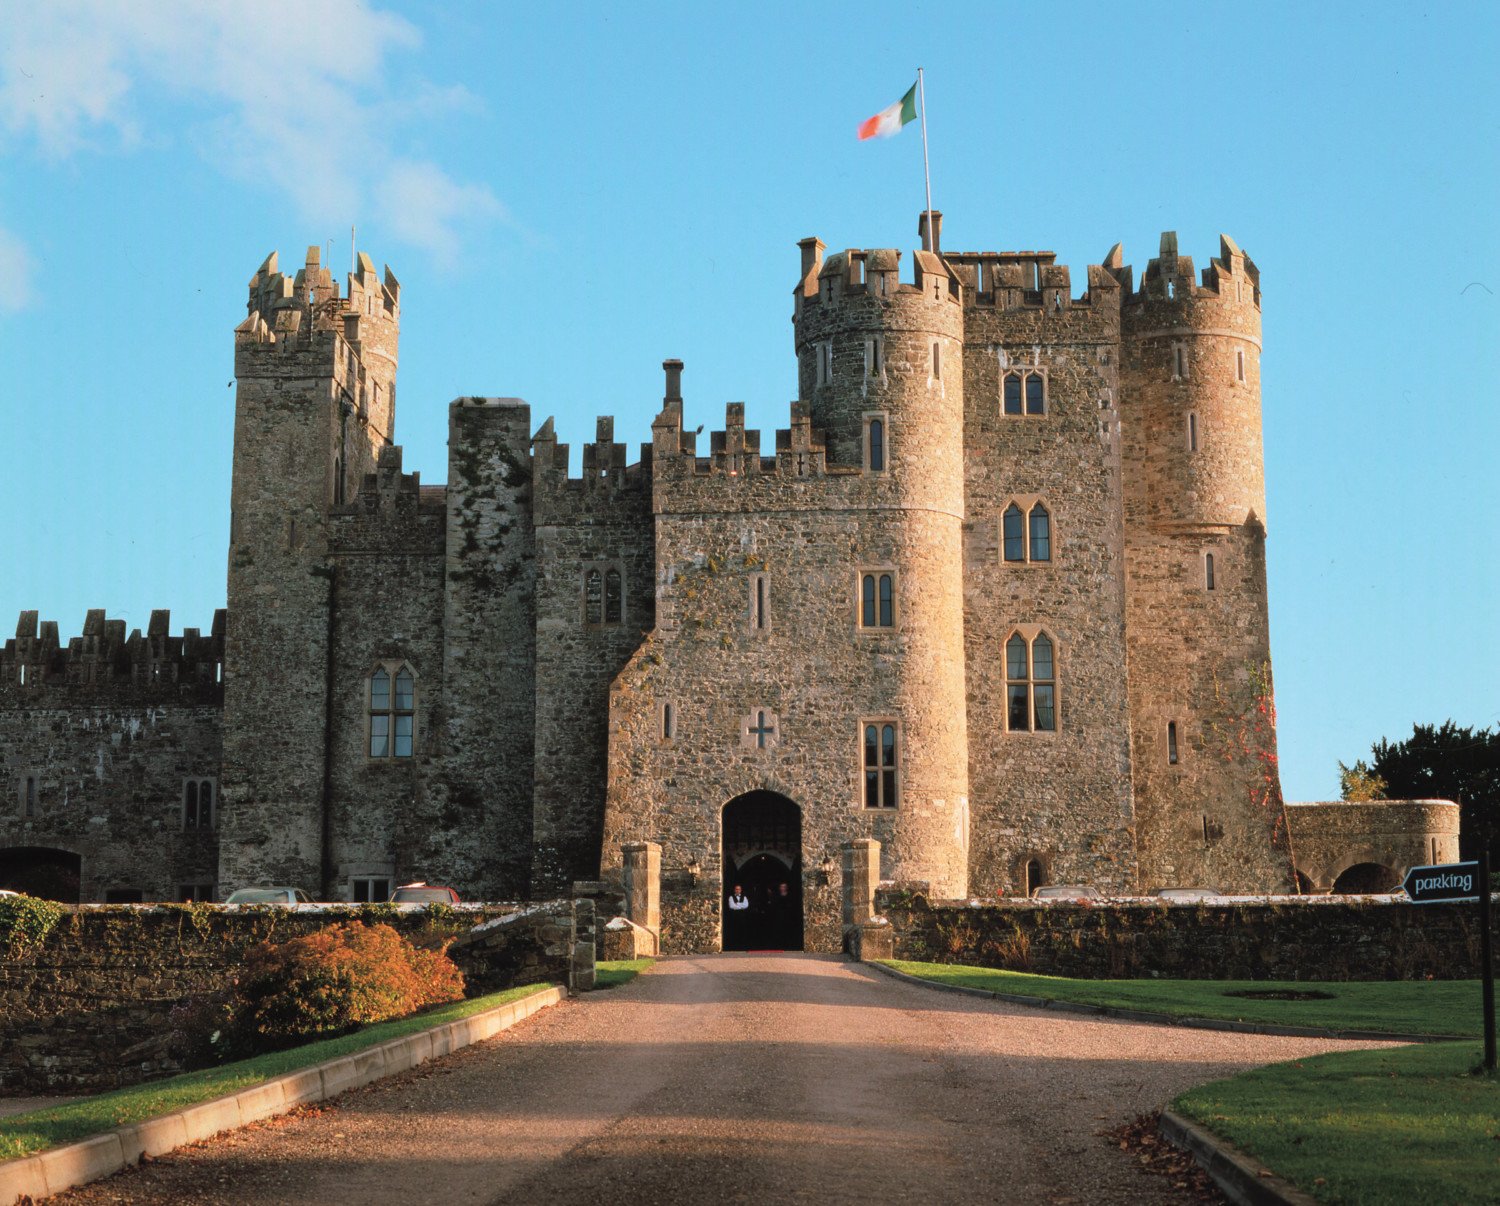 Семерки замка. Замок Банратти Ирландия. Замок Килки, Ирландия. Замки Ирландии 16 веков. Ирландия Килкенни замок мучеников.